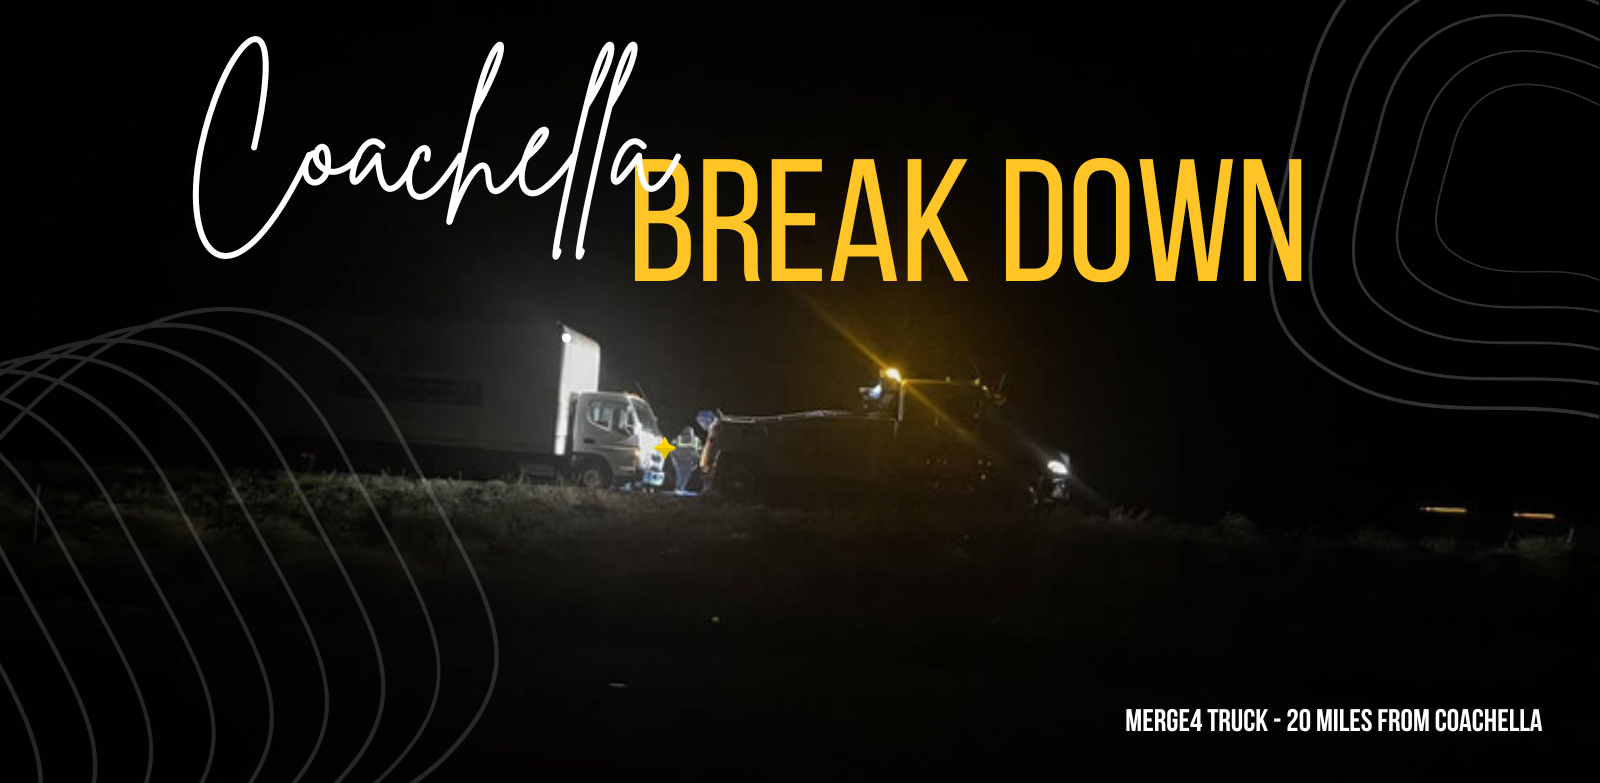 Coachella break down